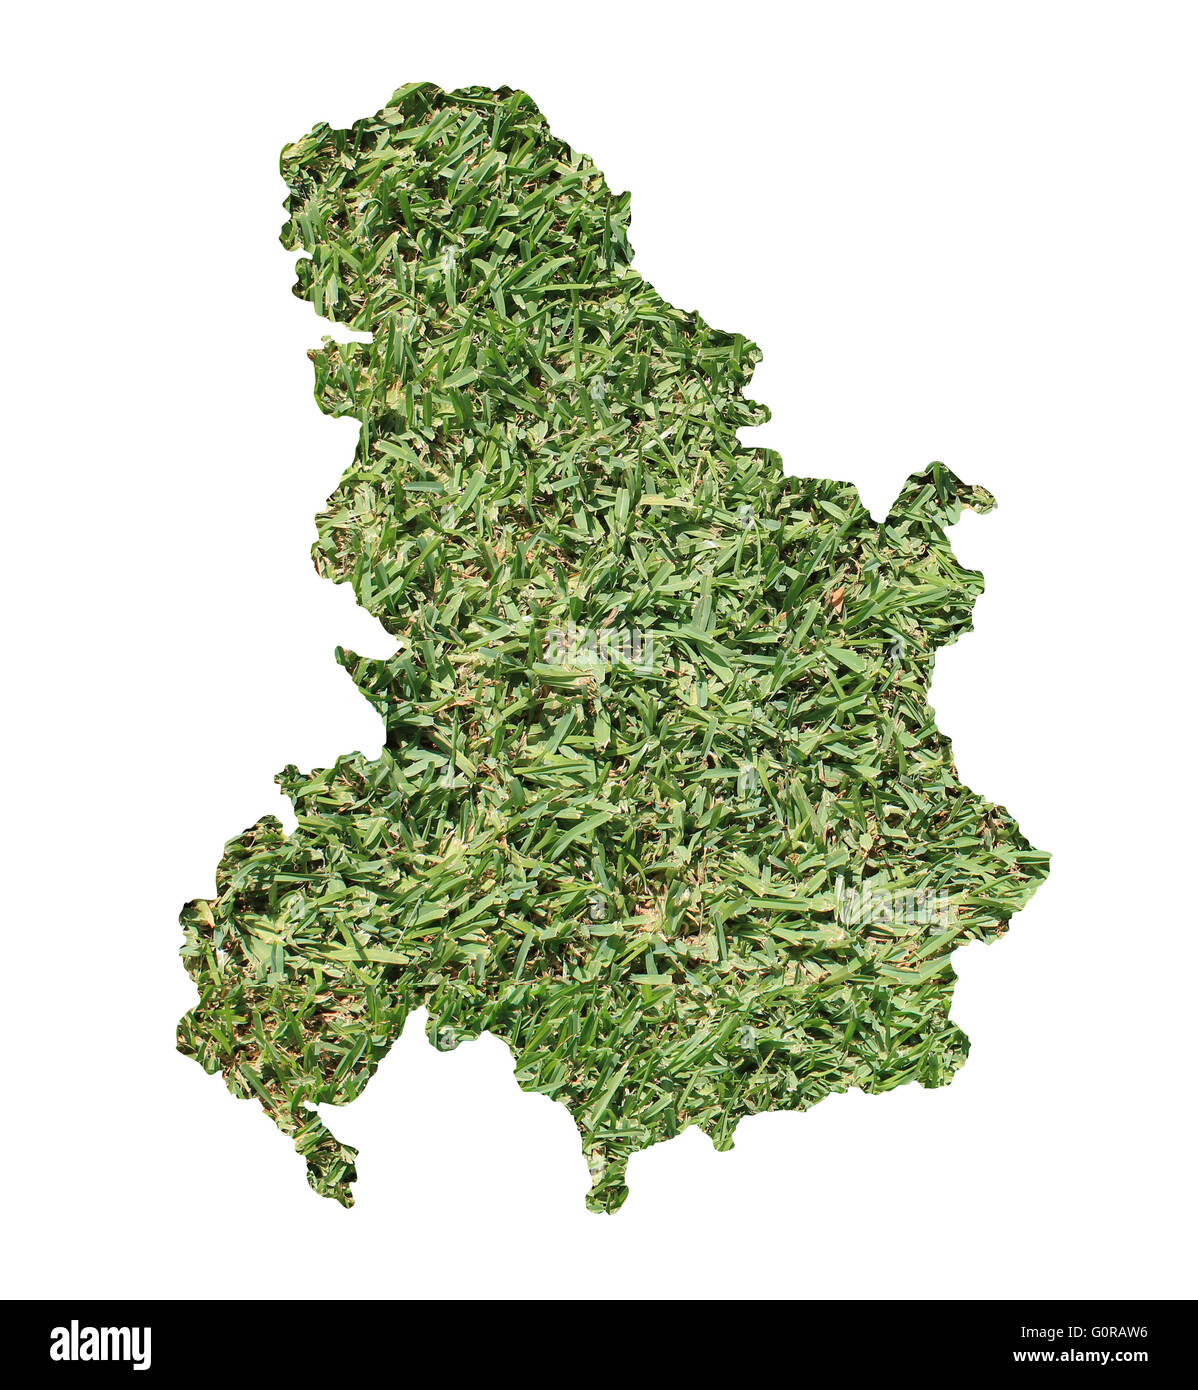 Mappa di Serbia e Montenegro riempito con erba verde, ambientale e concetto ecologico. Foto Stock